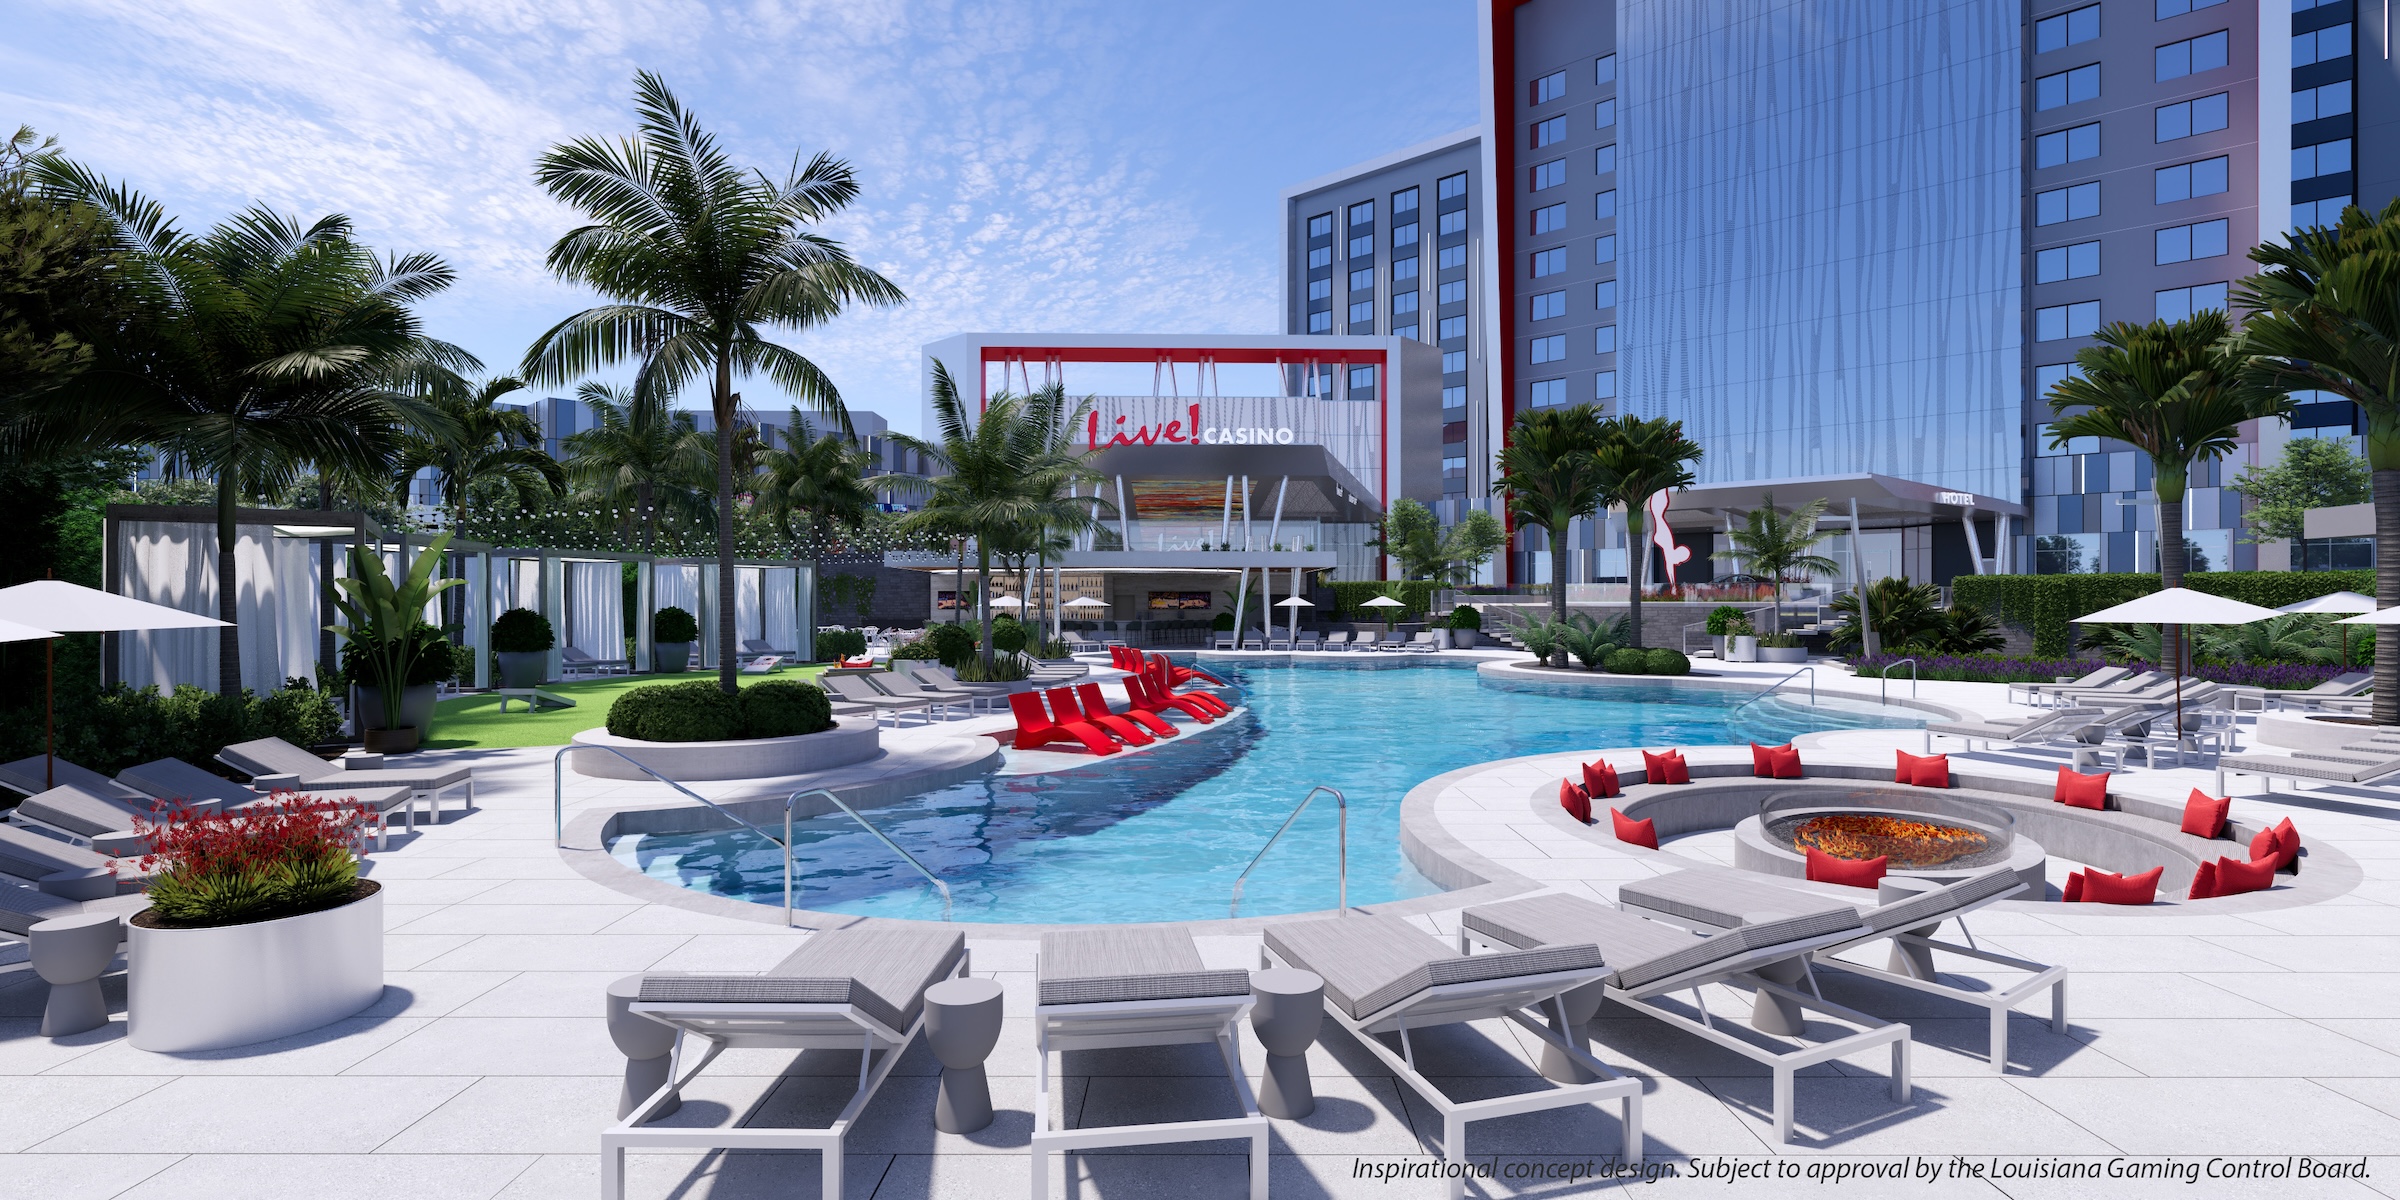 New luxury resort casino, Live! Casino & Hotel Louisiana, will be regional draw for Shreveport, Louisiana area